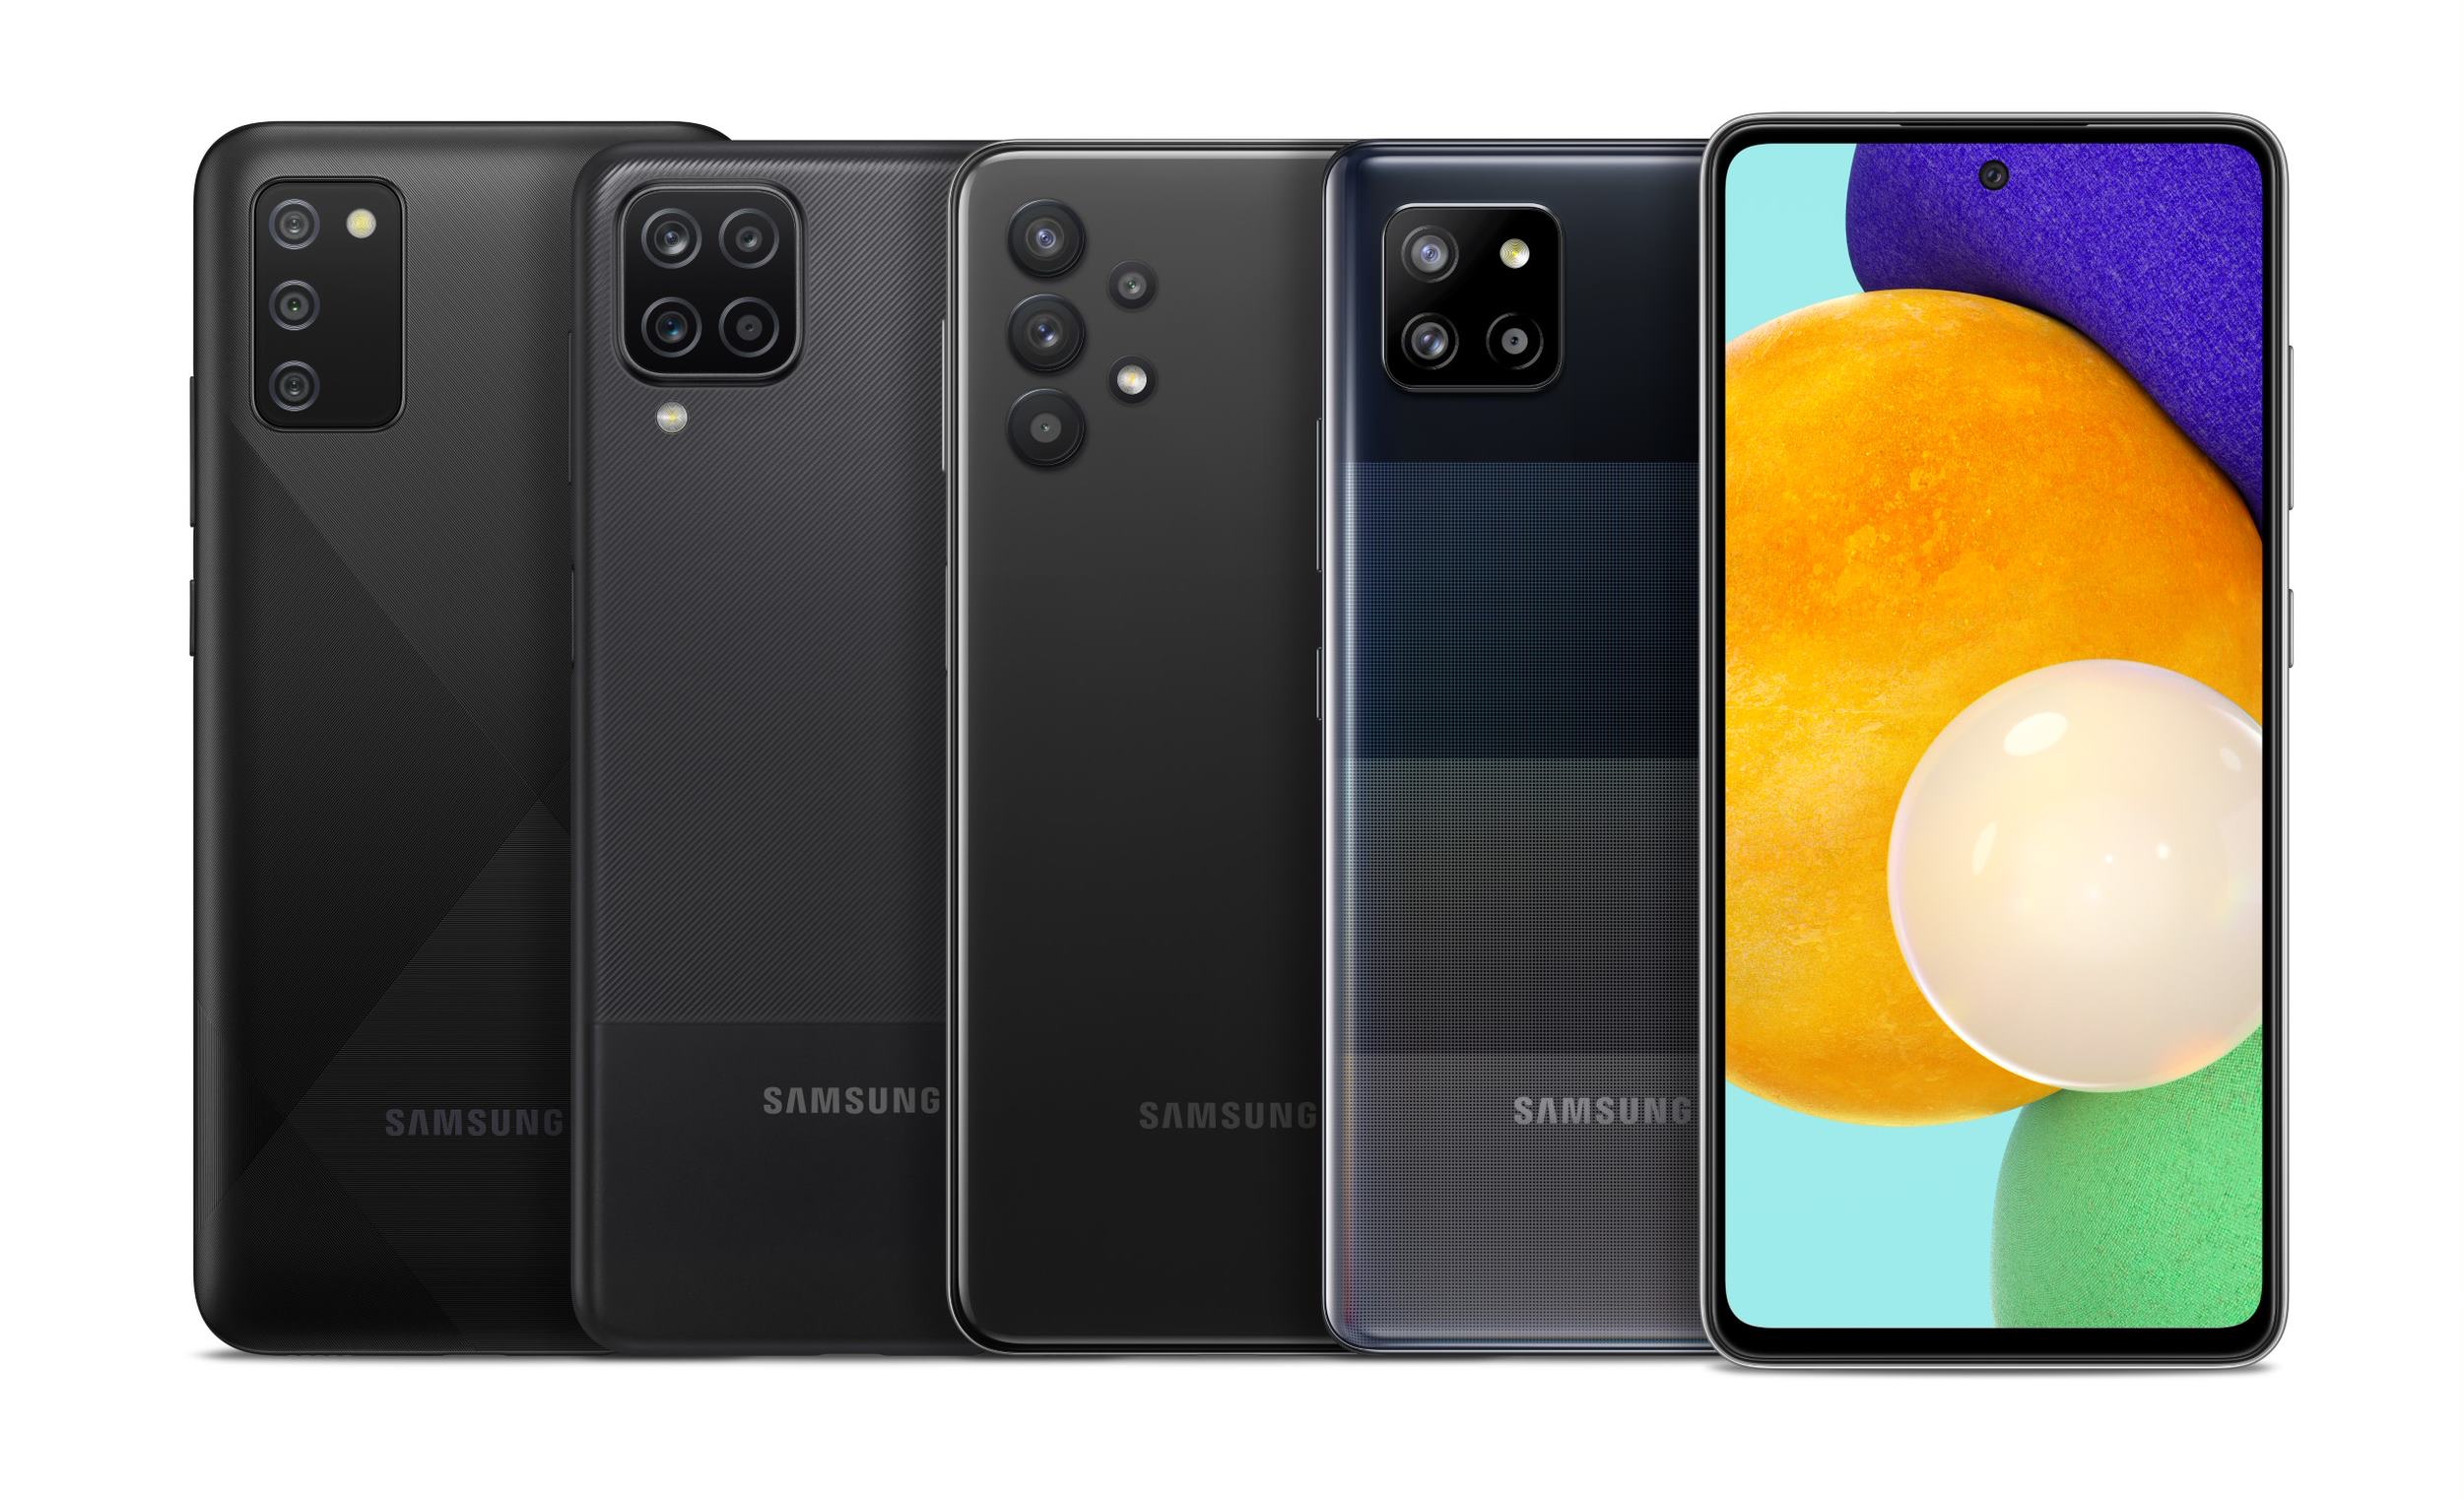 Source : Samsung lancera 64 nouveaux modèles de smartphones et de tablettes en 2022, dont 20 seront équipés de puces Exynos et de cartes graphiques AMD